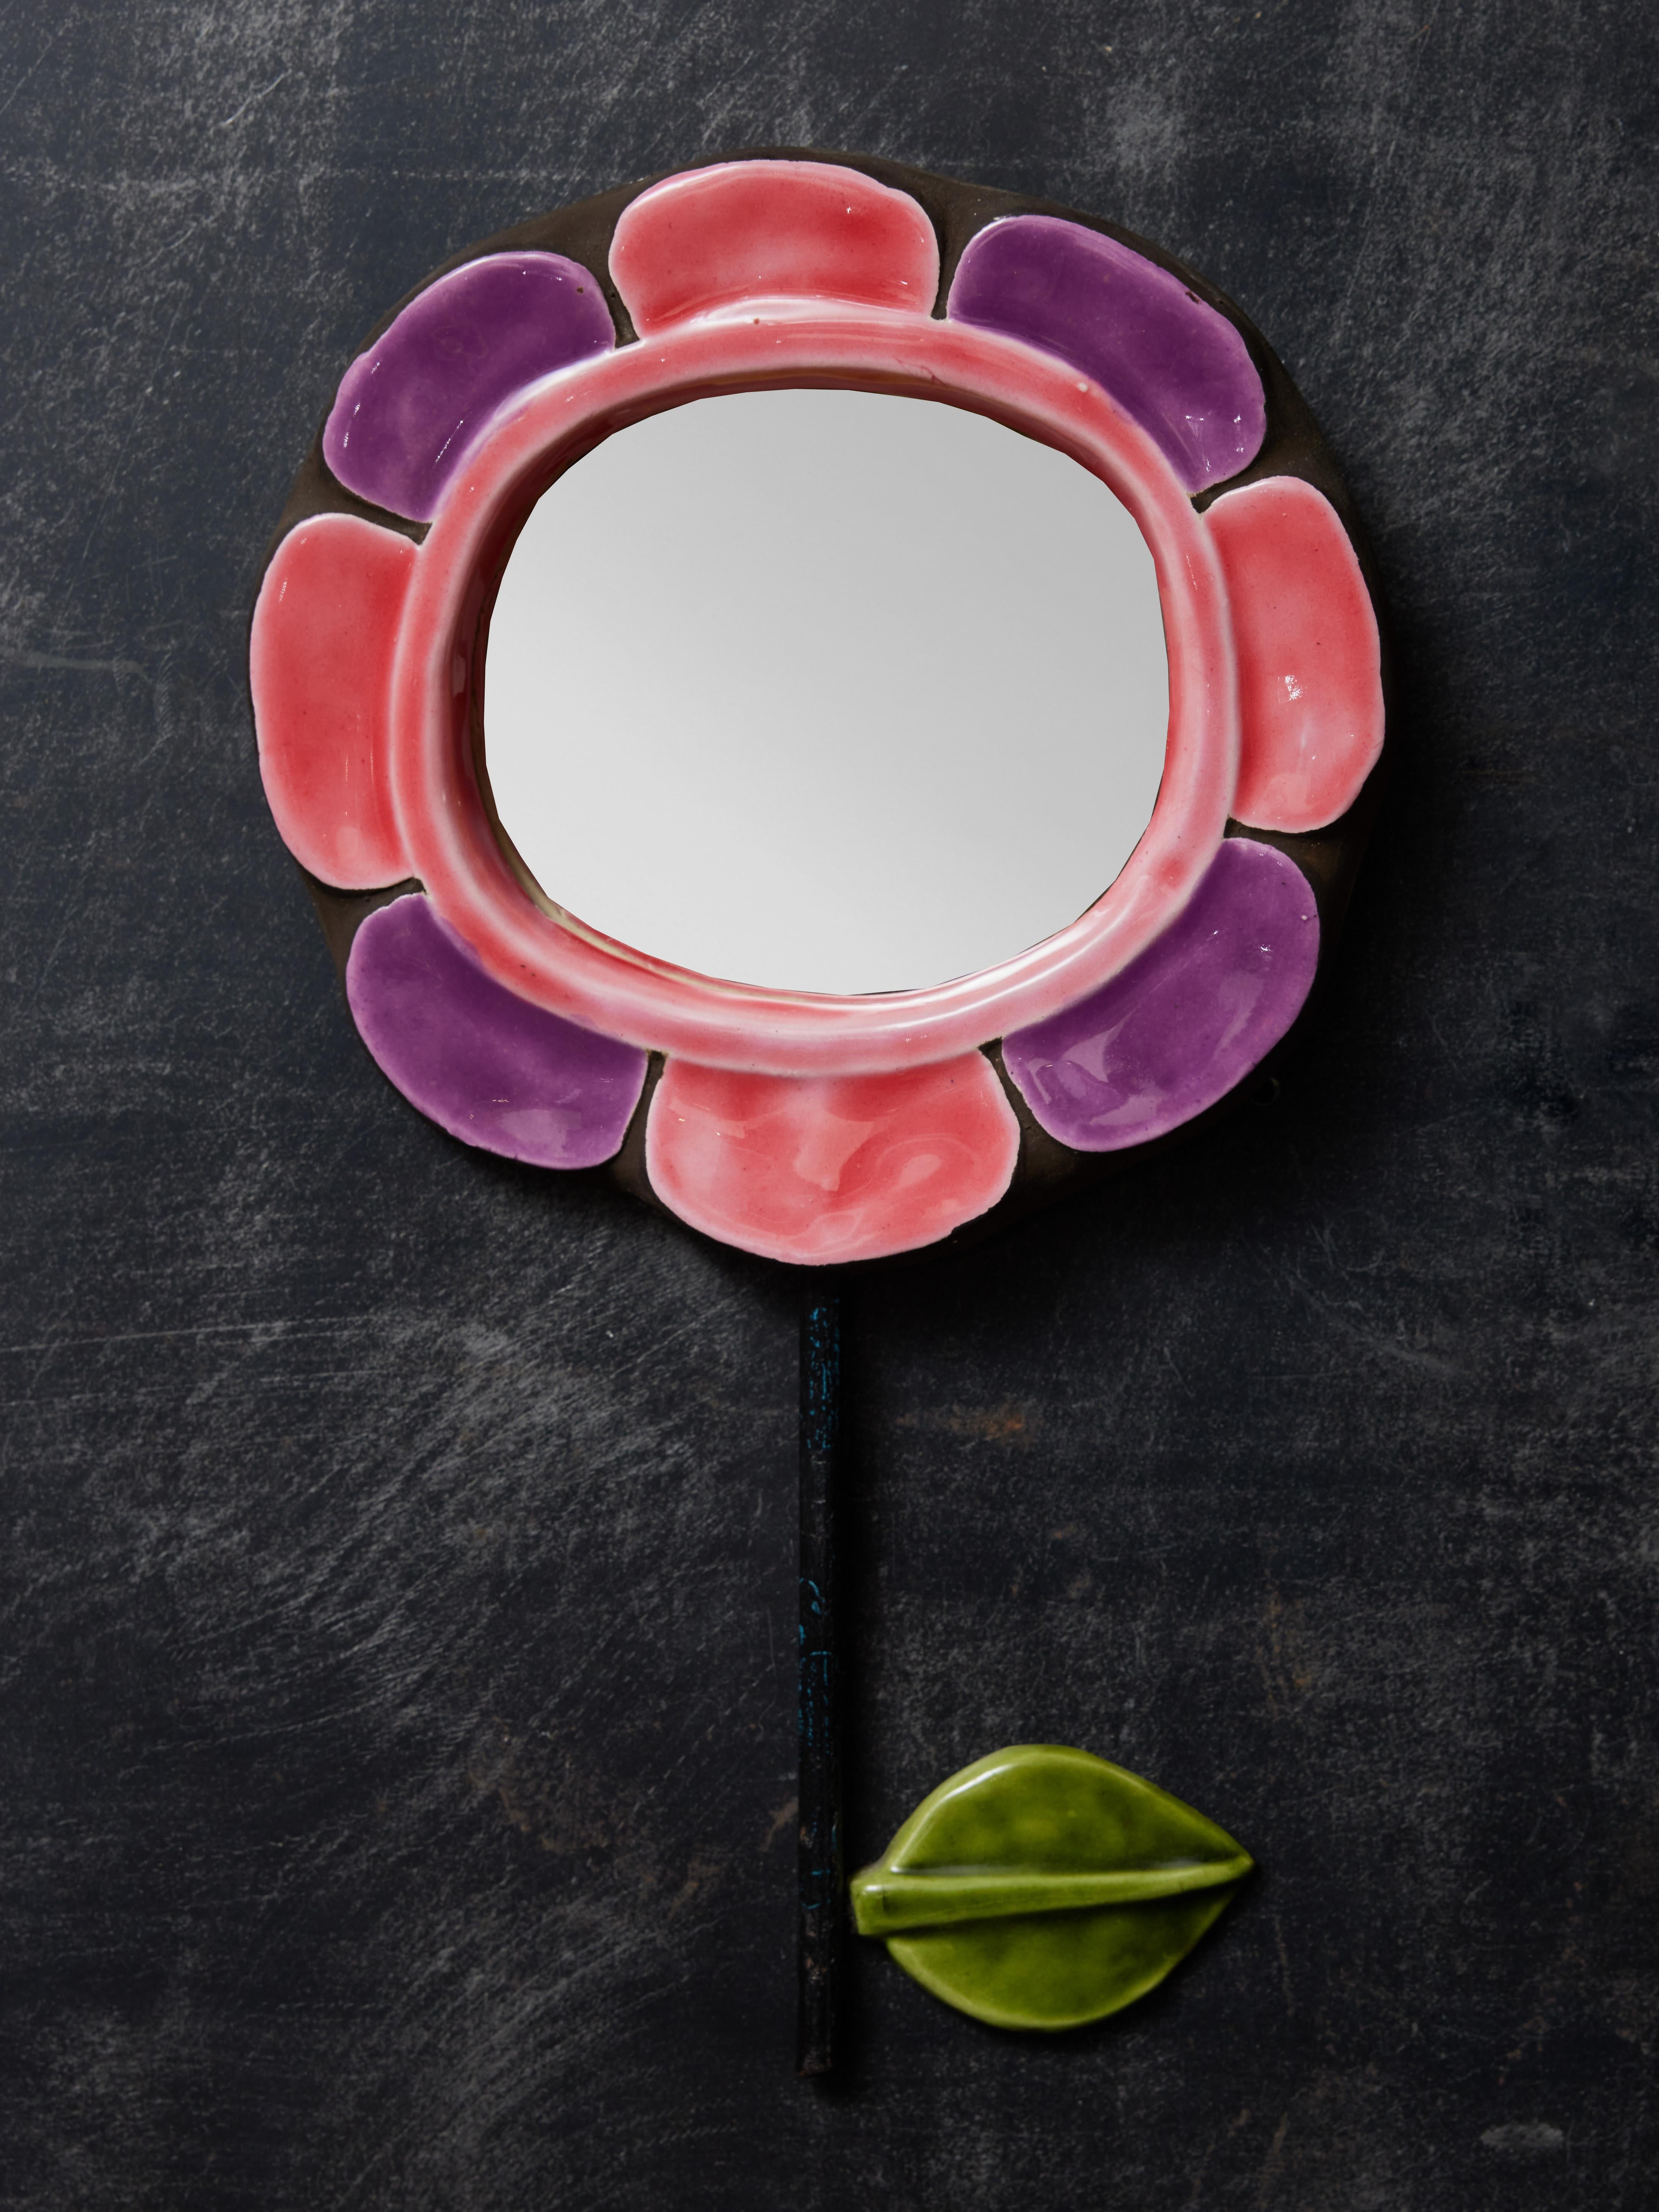 Miroir en céramique en forme de fleur avec des pétales roses et violets. Tige verticale en métal sur laquelle est fixée une tige de couleur verte.  feuille de céramique. Réalisé par Mithé Espelt.

Marie Thérèse Espelt, alias Mithé Espelt